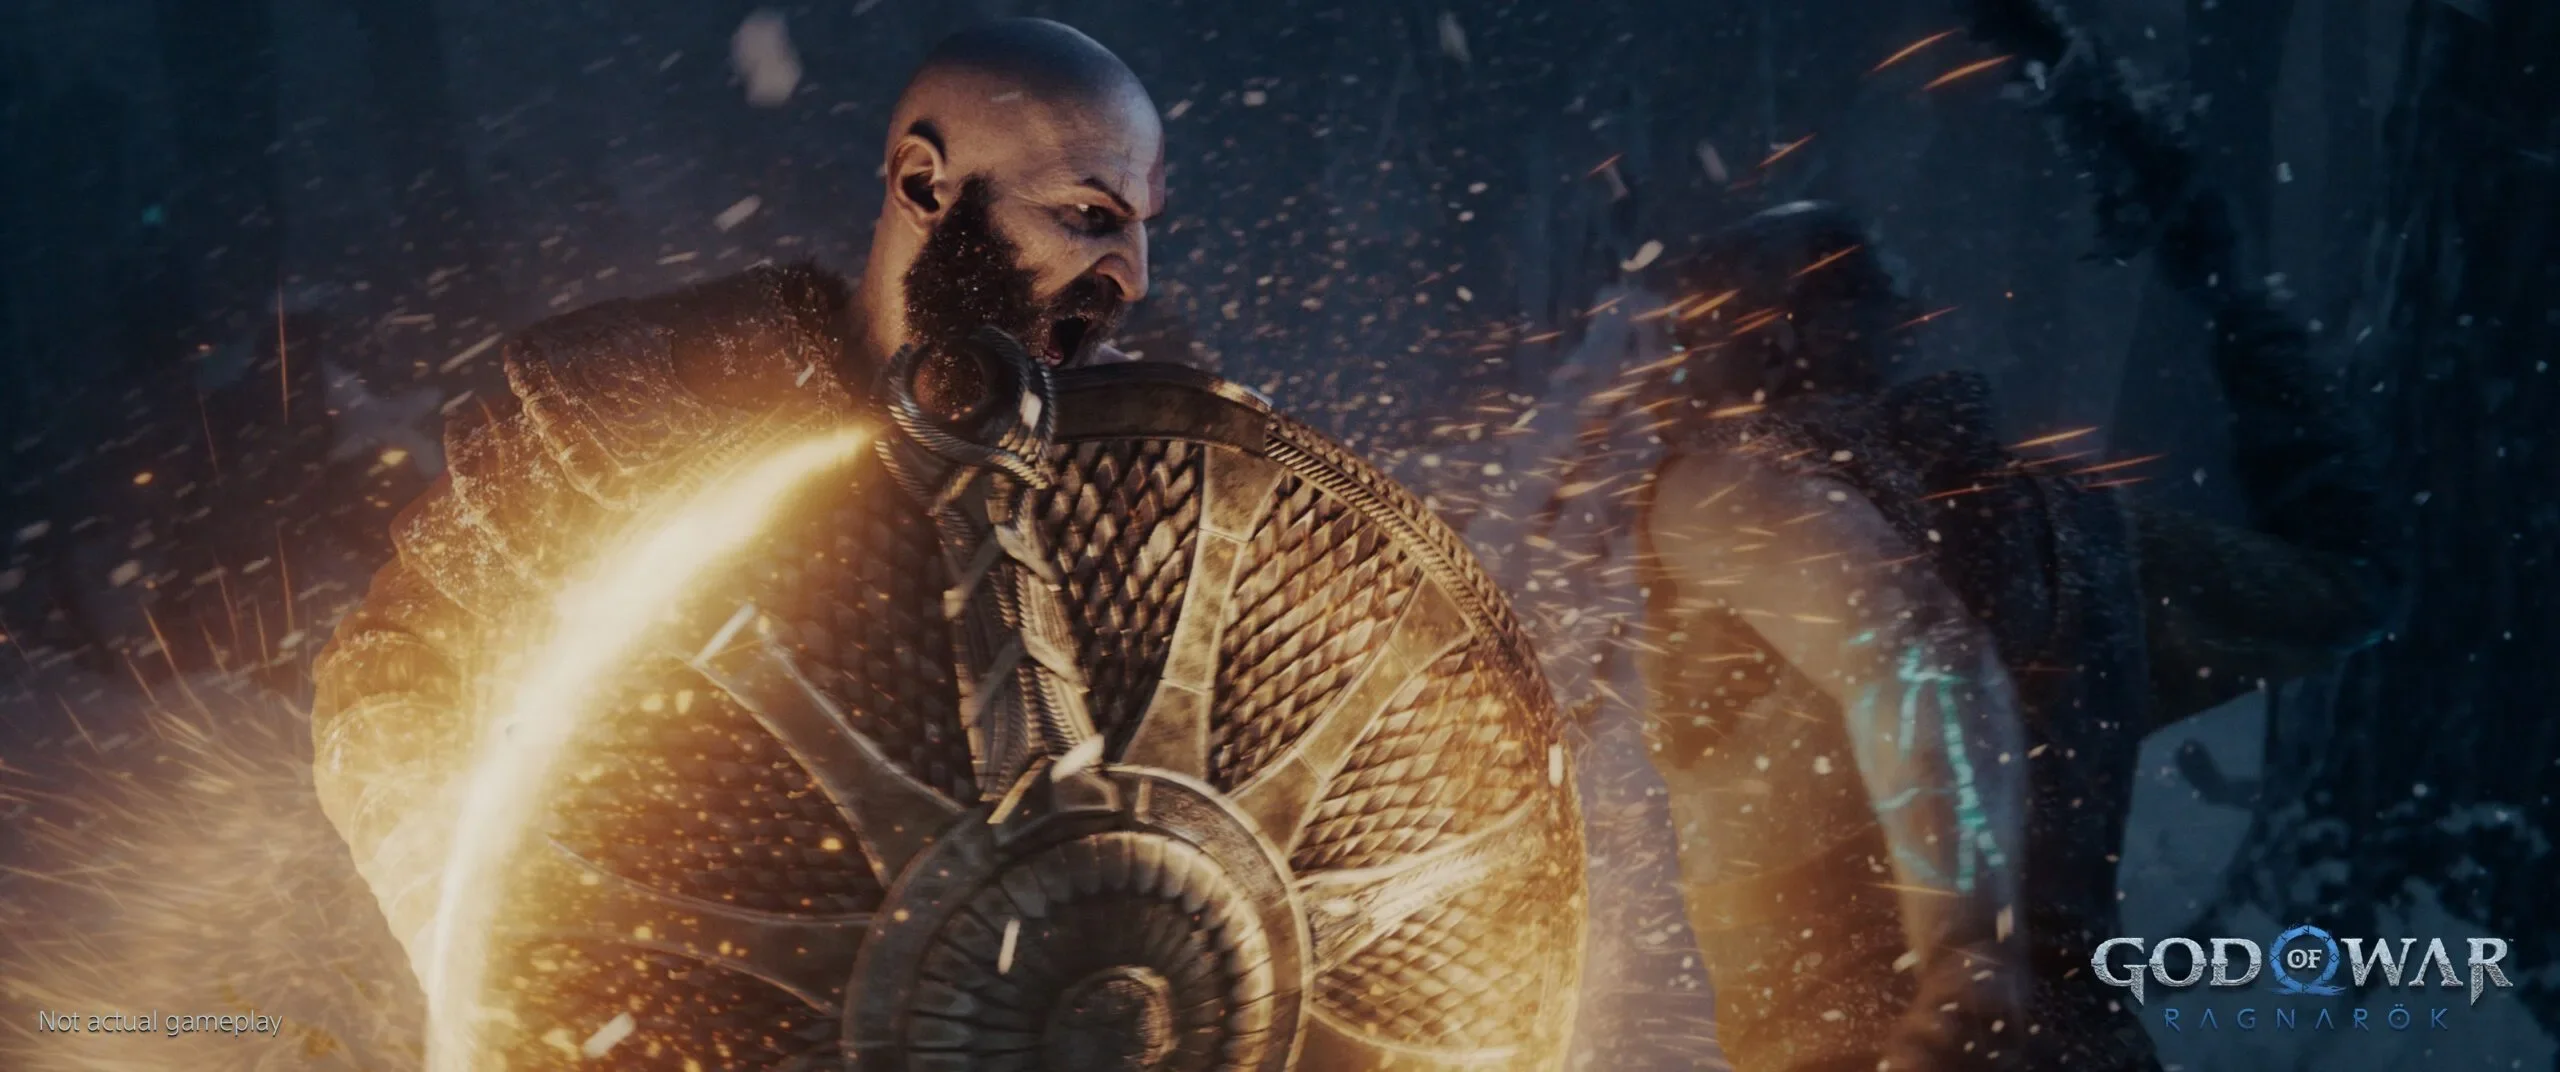 Kratos ataca com escudo em God of War Ragnarok